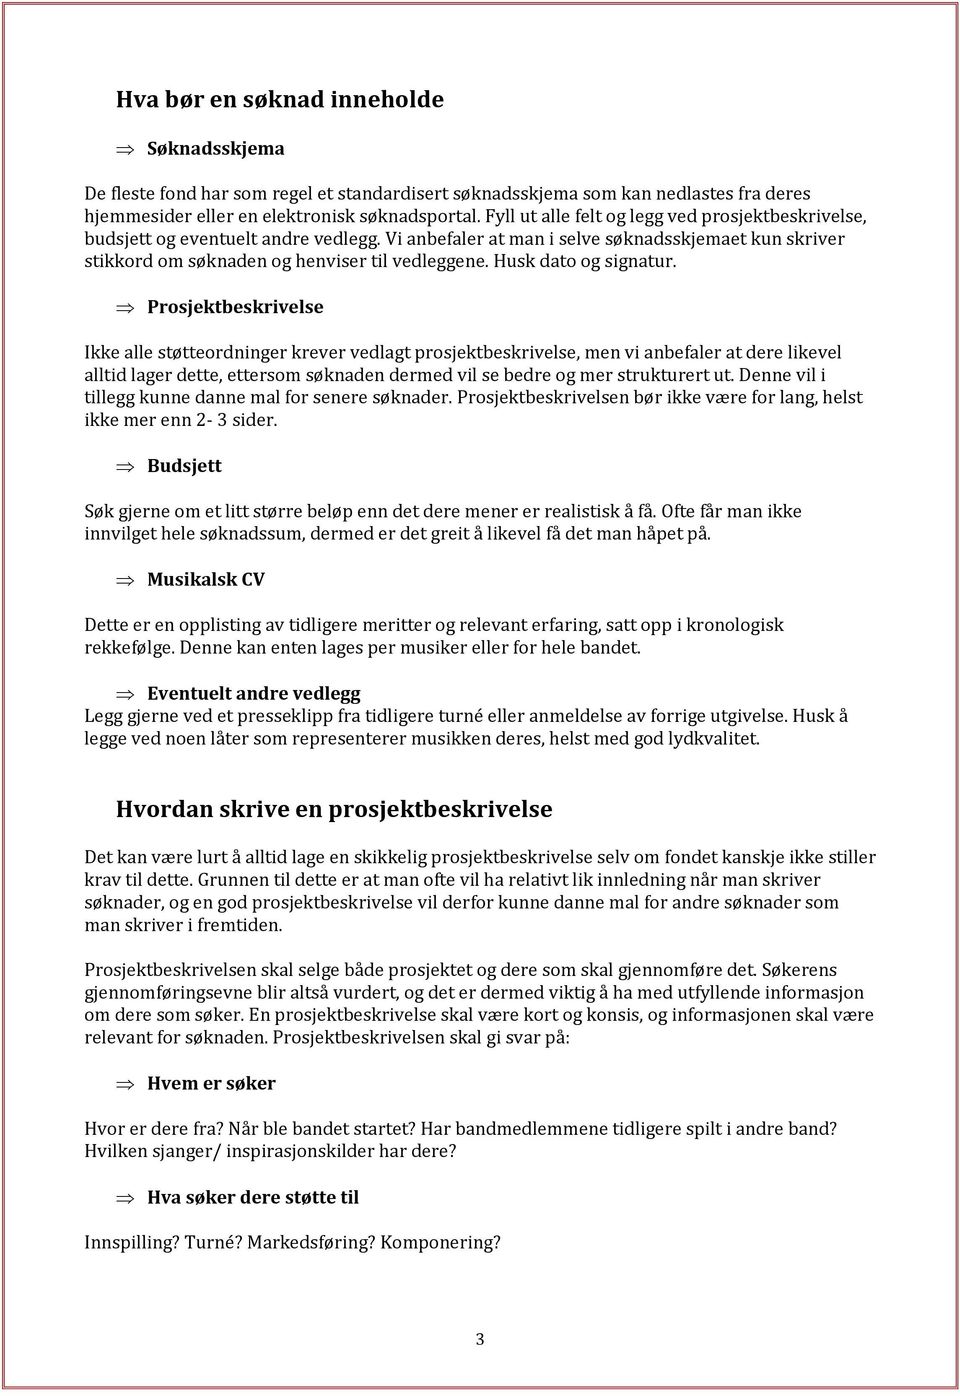 GRAMARTS GUIDE TIL SØKNASSKRIVING - PDF Gratis nedlasting